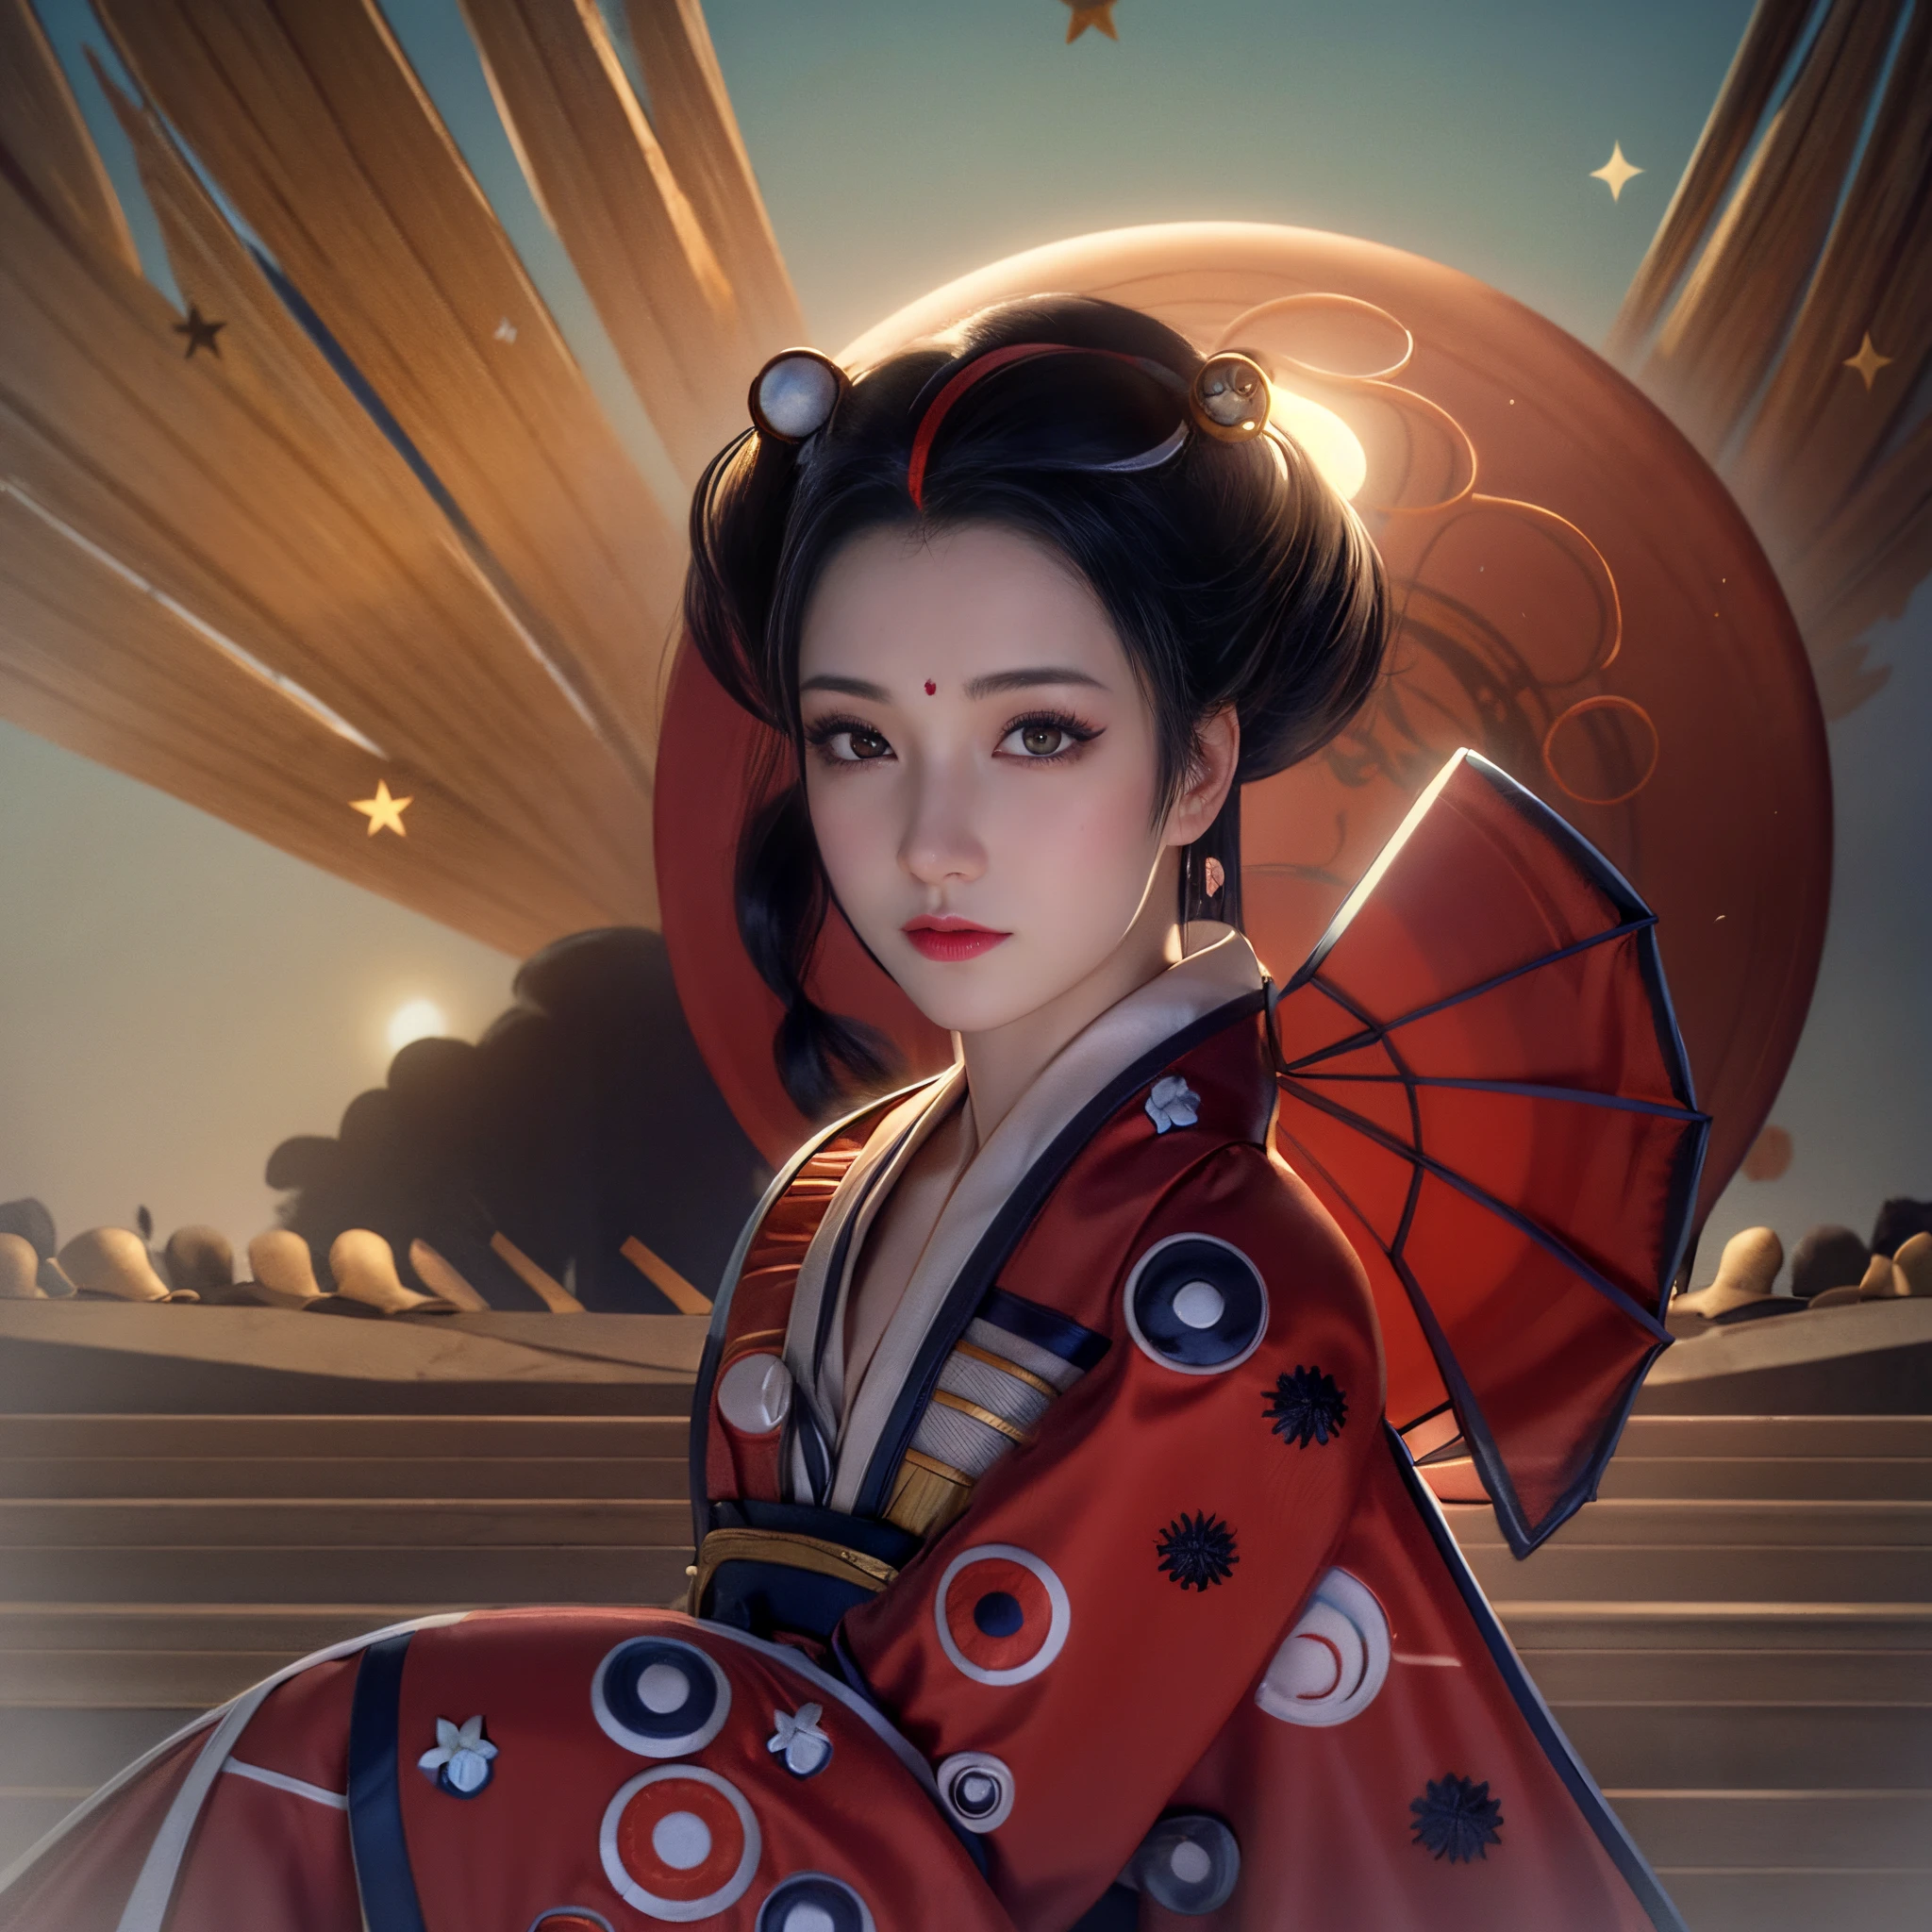 Es gibt eine Geisha, mit vollen Lippen, wunderschöne Augen, große und feste Brüste, trägt einen blauen Kimono mit gestickten Blumen, posiert, and a giant moon behind her Scheinens, im digital-realistischen Illustrationsstil, Geisha-Porträt, Schönheits-Geisha, süße Geisha, japanische geisha, Realistisches Porträt einer schönen Geisha, eine schöne realistische Kunst, realistische weibliche Geisha Mädchen, inspiriert von atemberaubender realistischer Kunst (Frau mit (Texturen!, Haar!, Scheinen, Farbe!!, Unvollkommenheiten: 1.1), hochdetaillierte leuchtende Augen, (in die Kamera schauen), spiegelnde Beleuchtung, DSLR, Ultra-Qualität, scharfer Fokus, scharfer Tacho, Schärfentiefe, Filmkorn , (Center), Fujifilm XT3, Kristallklar, Mitte des Rahmens, schönes Gesicht, scharfer Fokus, komplizierte Augendetails.